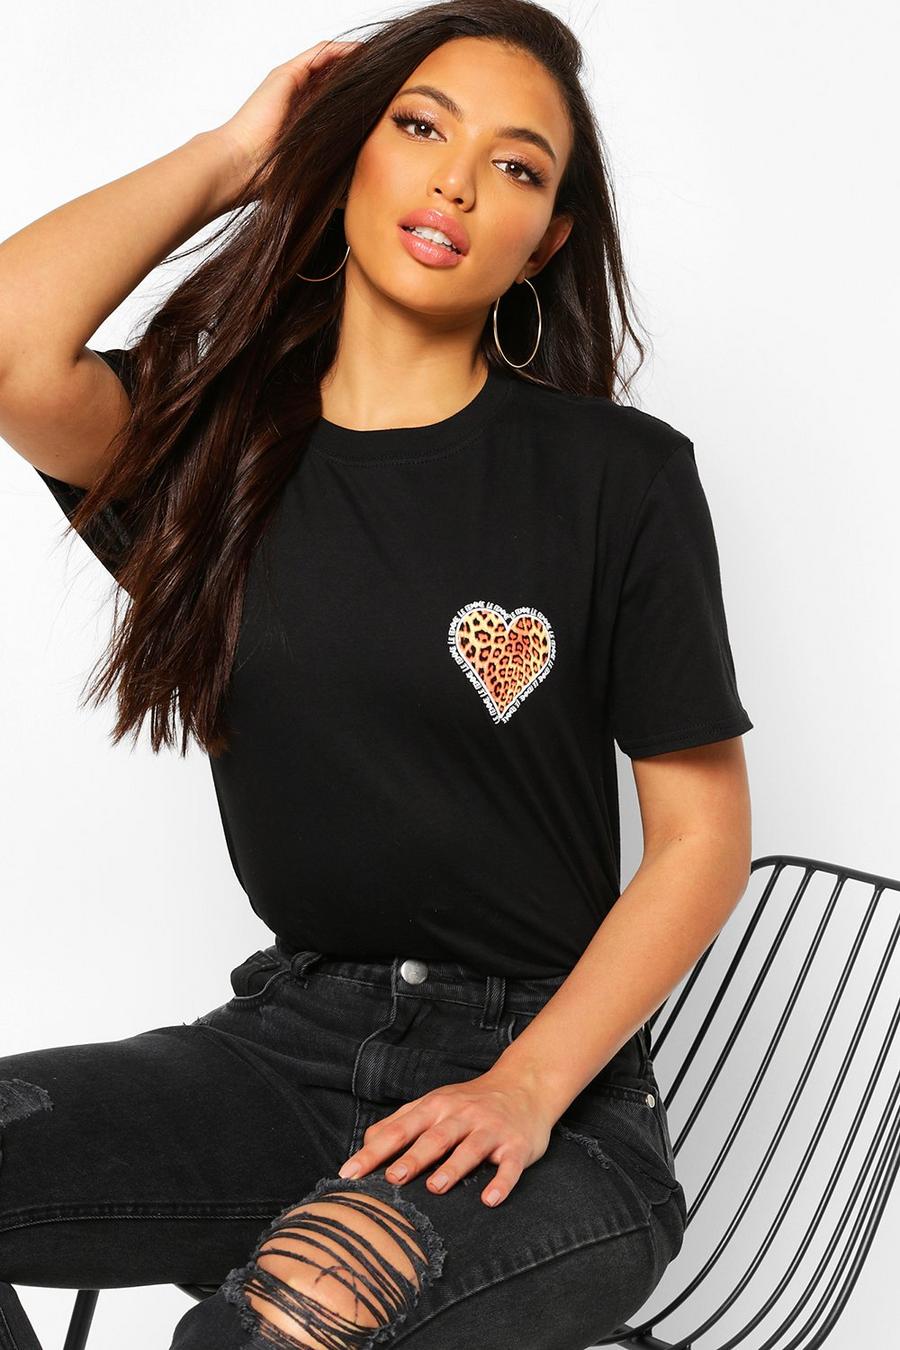 Zwart Lang T-shirt met print van luipaard op het hartzakje image number 1